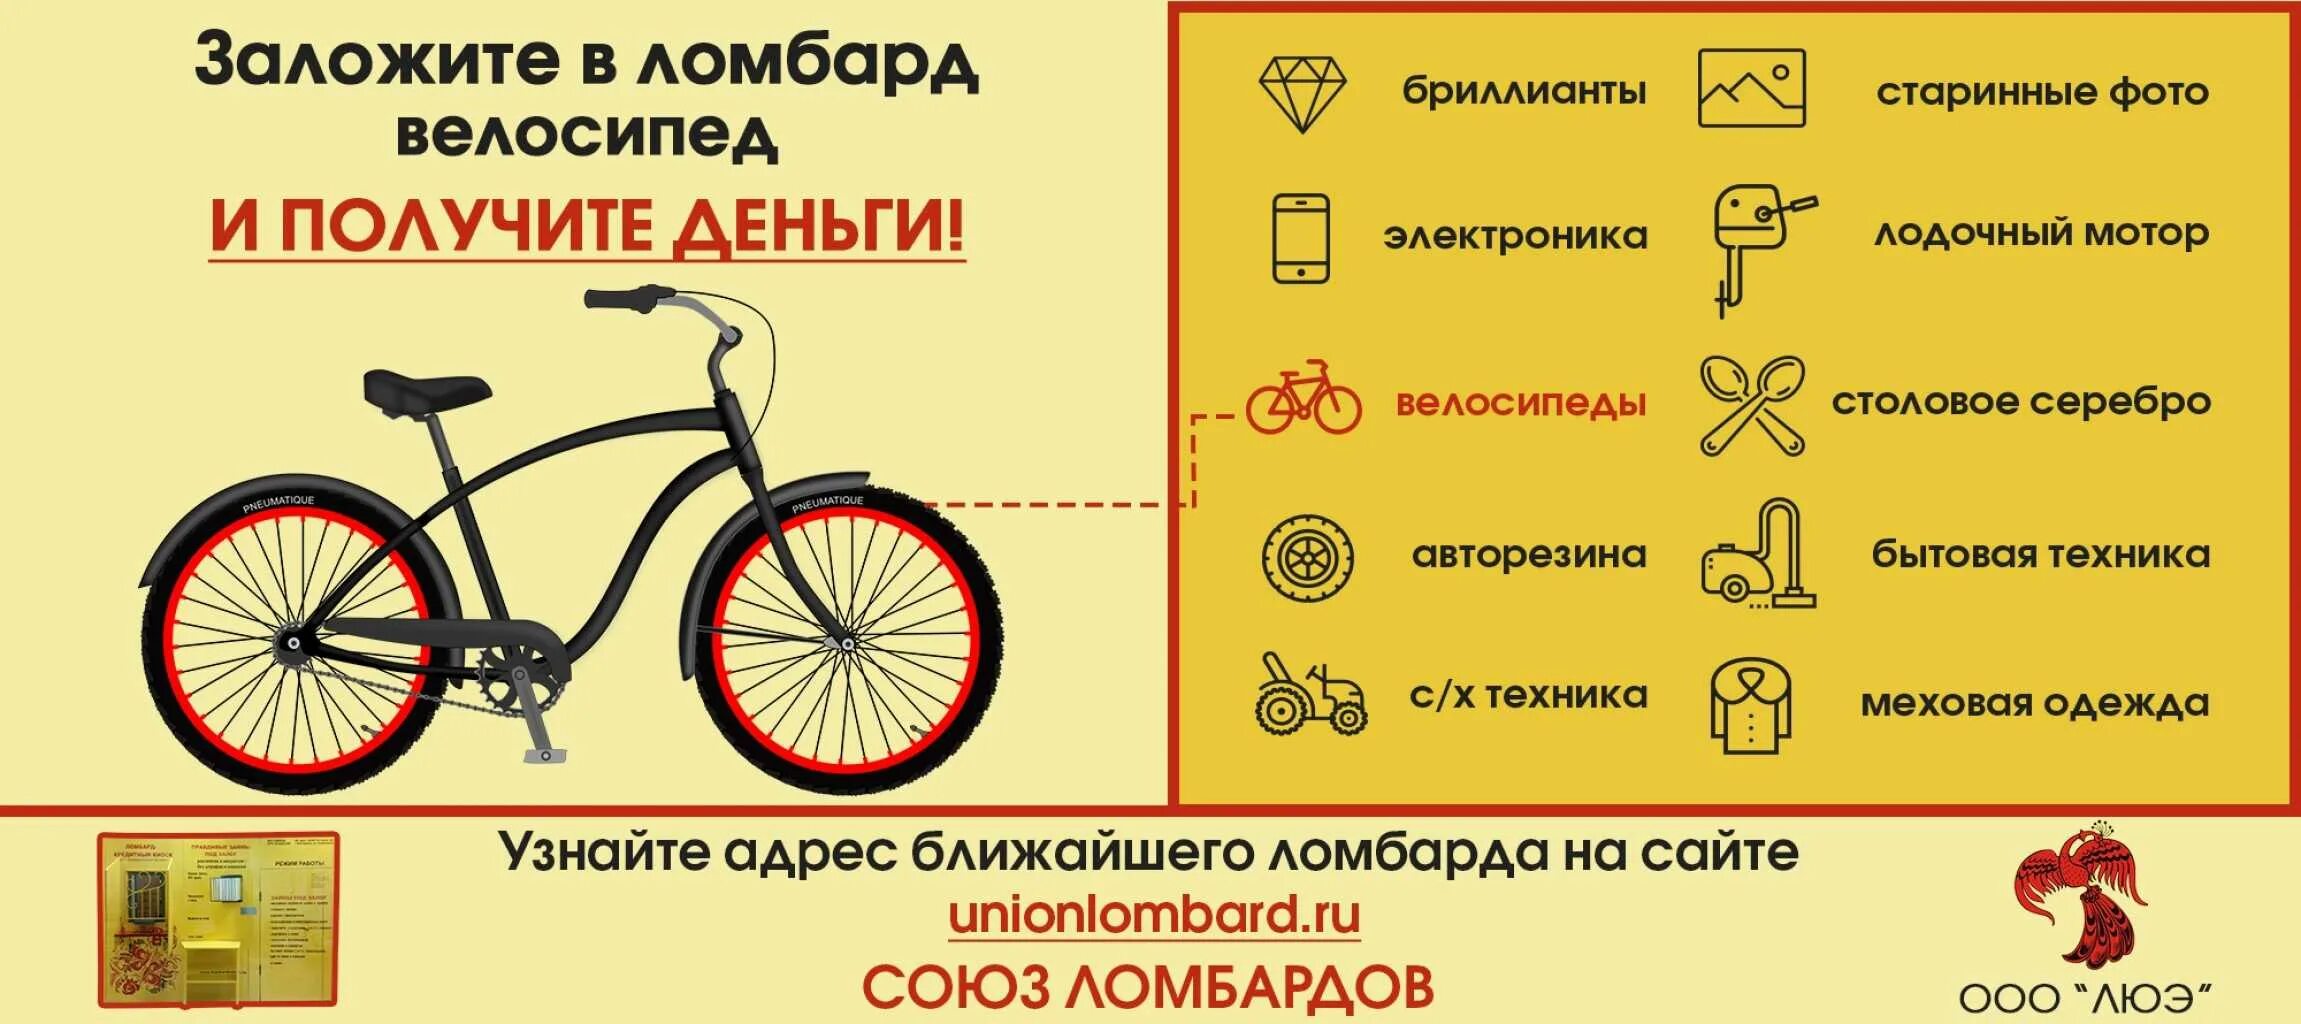 Где можно взять велосипед. Ломбард велосипед. Объявление о продаже велосипеда. Можно ли сдать велосипед в ломбард. Залог велосипеда.